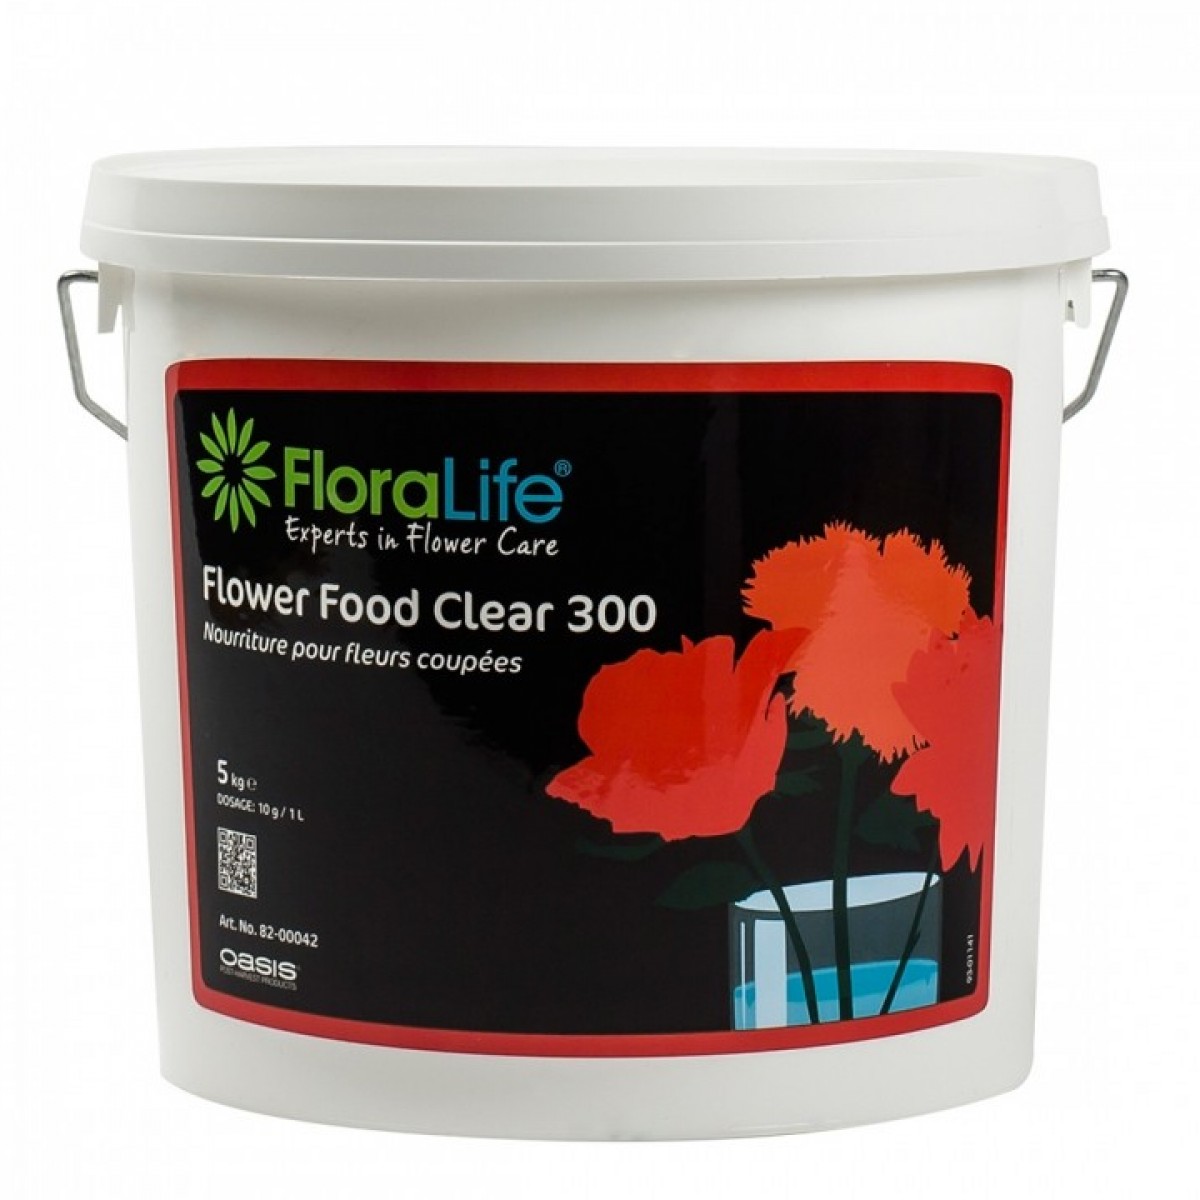 1305 Floralife® Flower Food Powder (Crystal Clear 300) 5kg